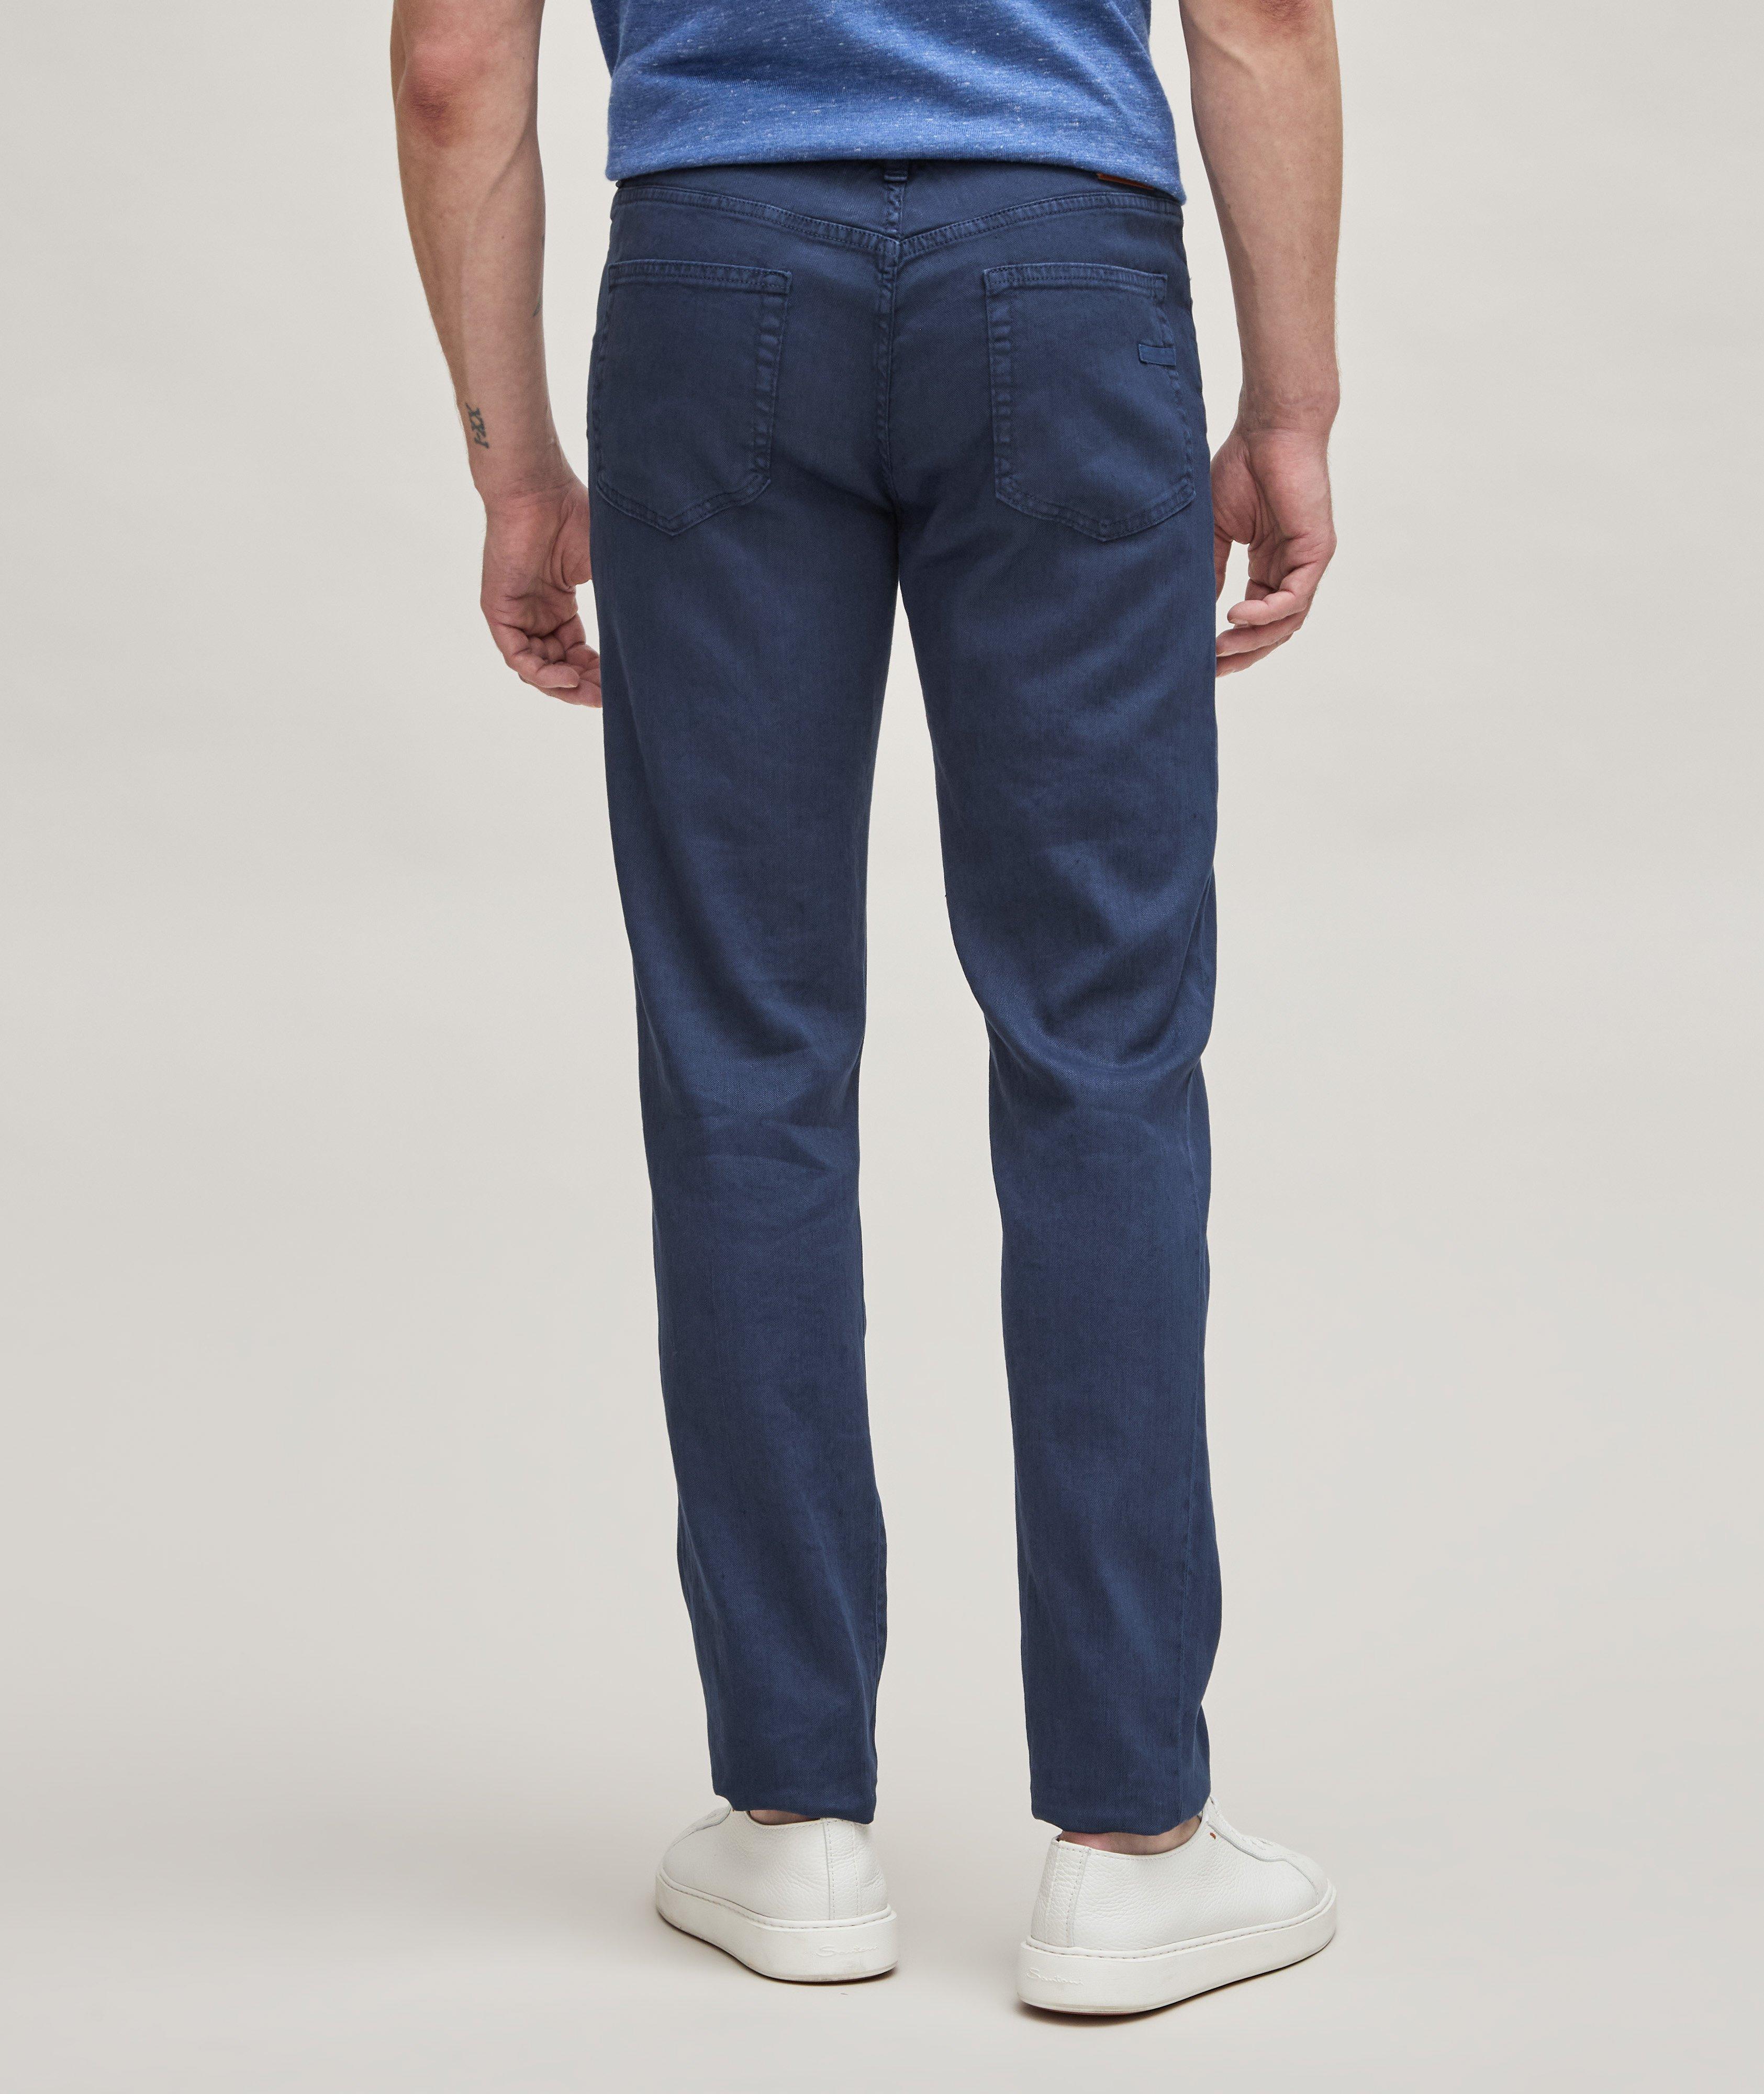 Stretch-Linen & Cotton Roccia Jeans image 2